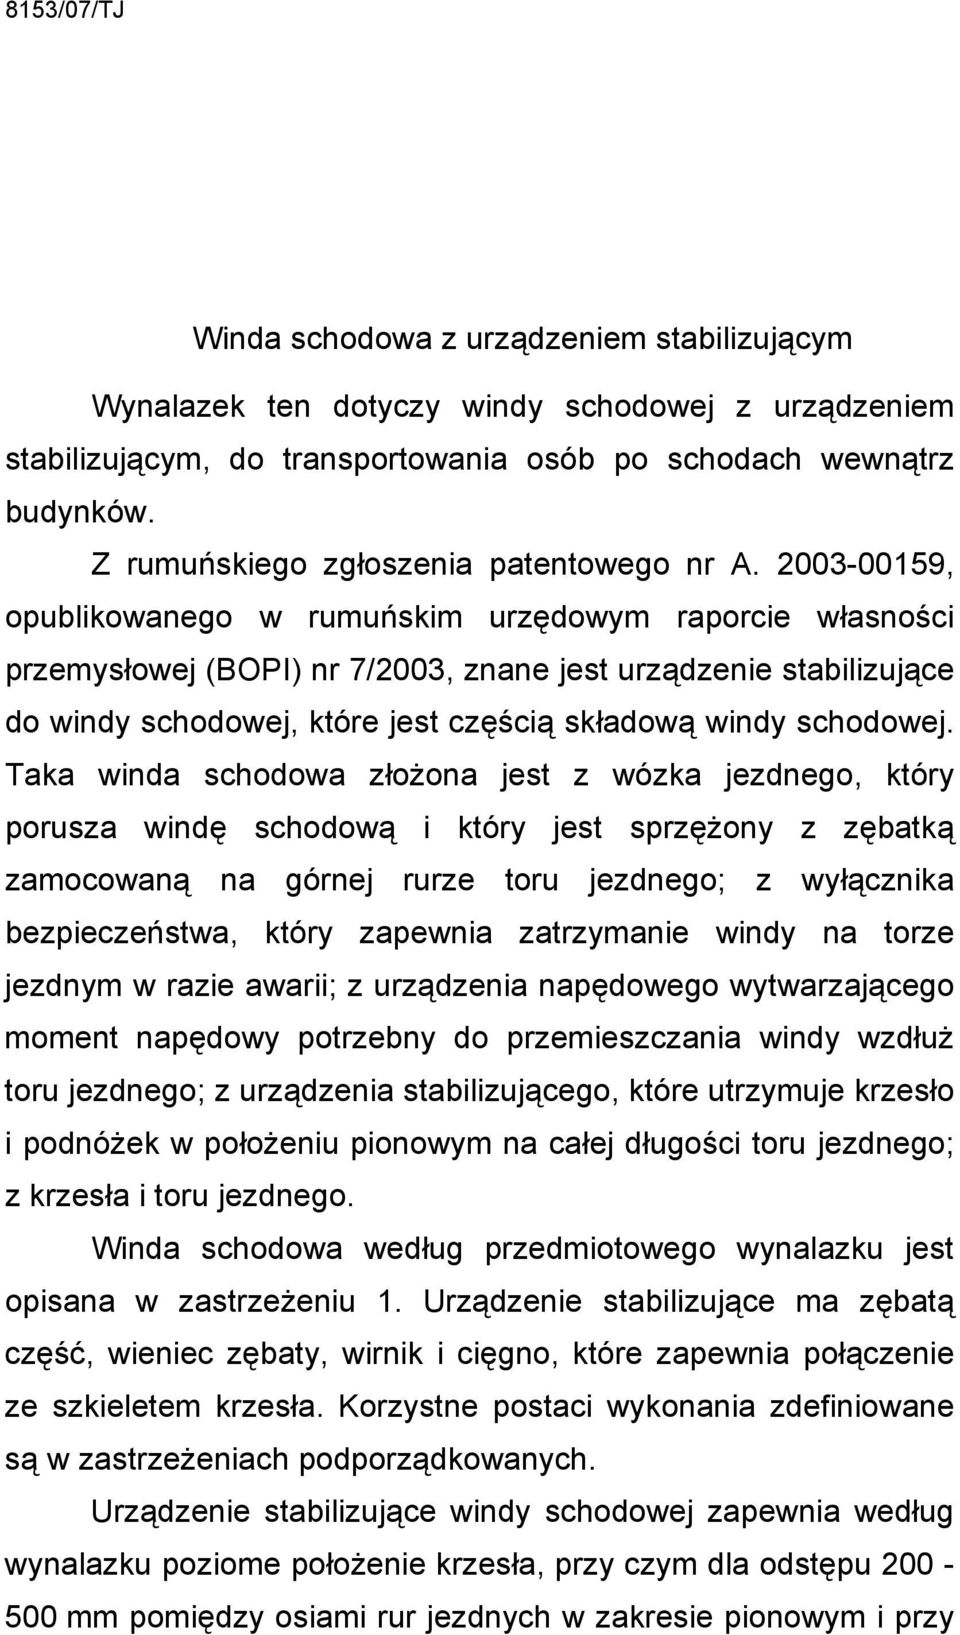 2003-00159, opublikowanego w rumuńskim urzędowym raporcie własności przemysłowej (BOPI) nr 7/2003, znane jest urządzenie stabilizujące do windy schodowej, które jest częścią składową windy schodowej.